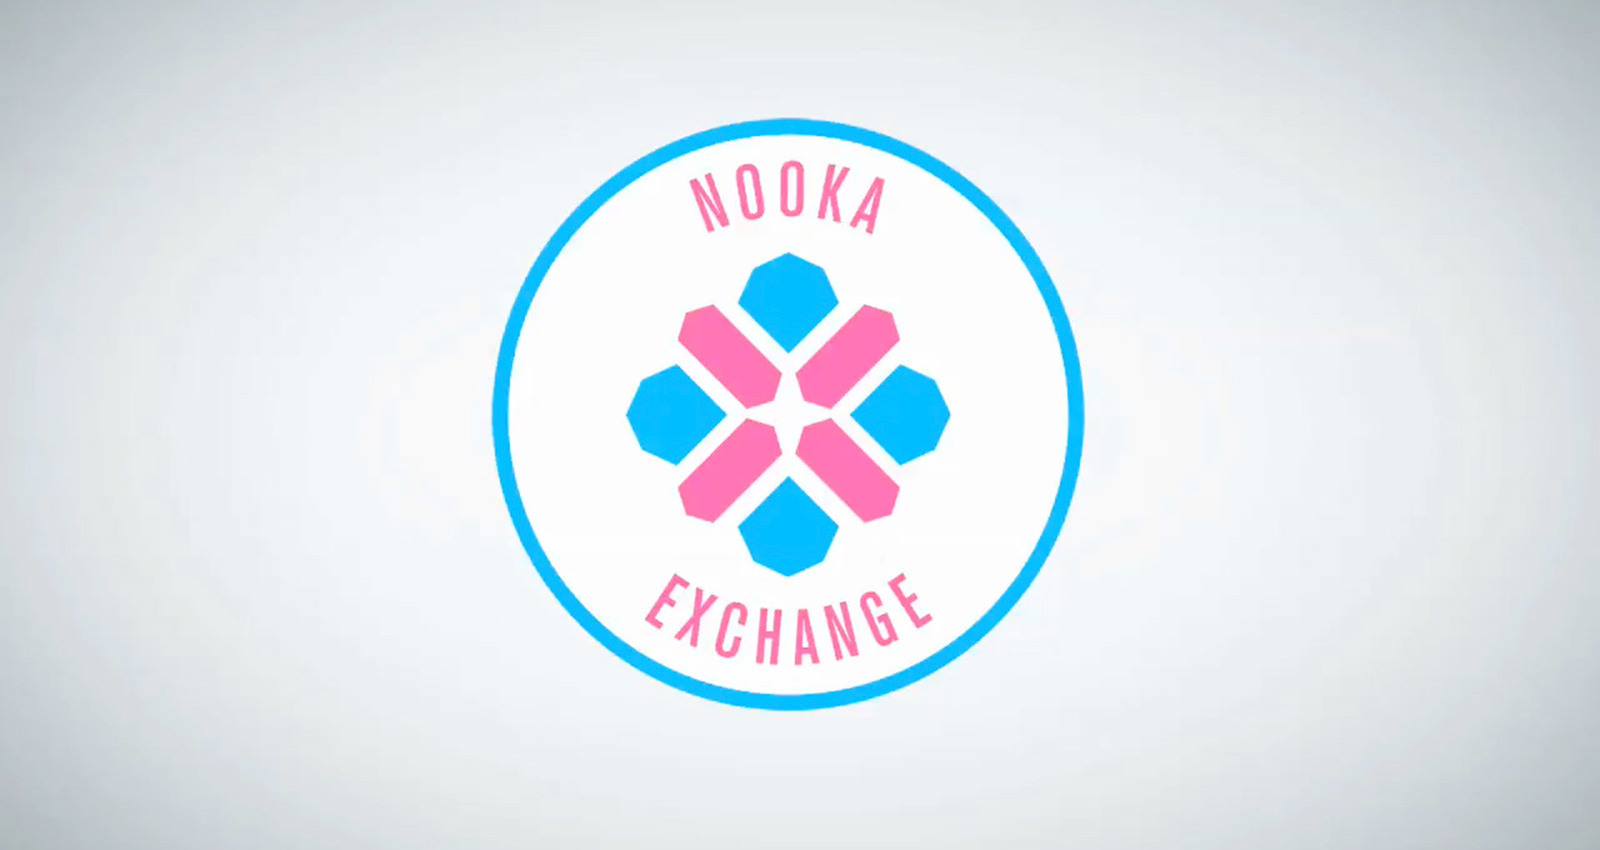 Nooka exchange